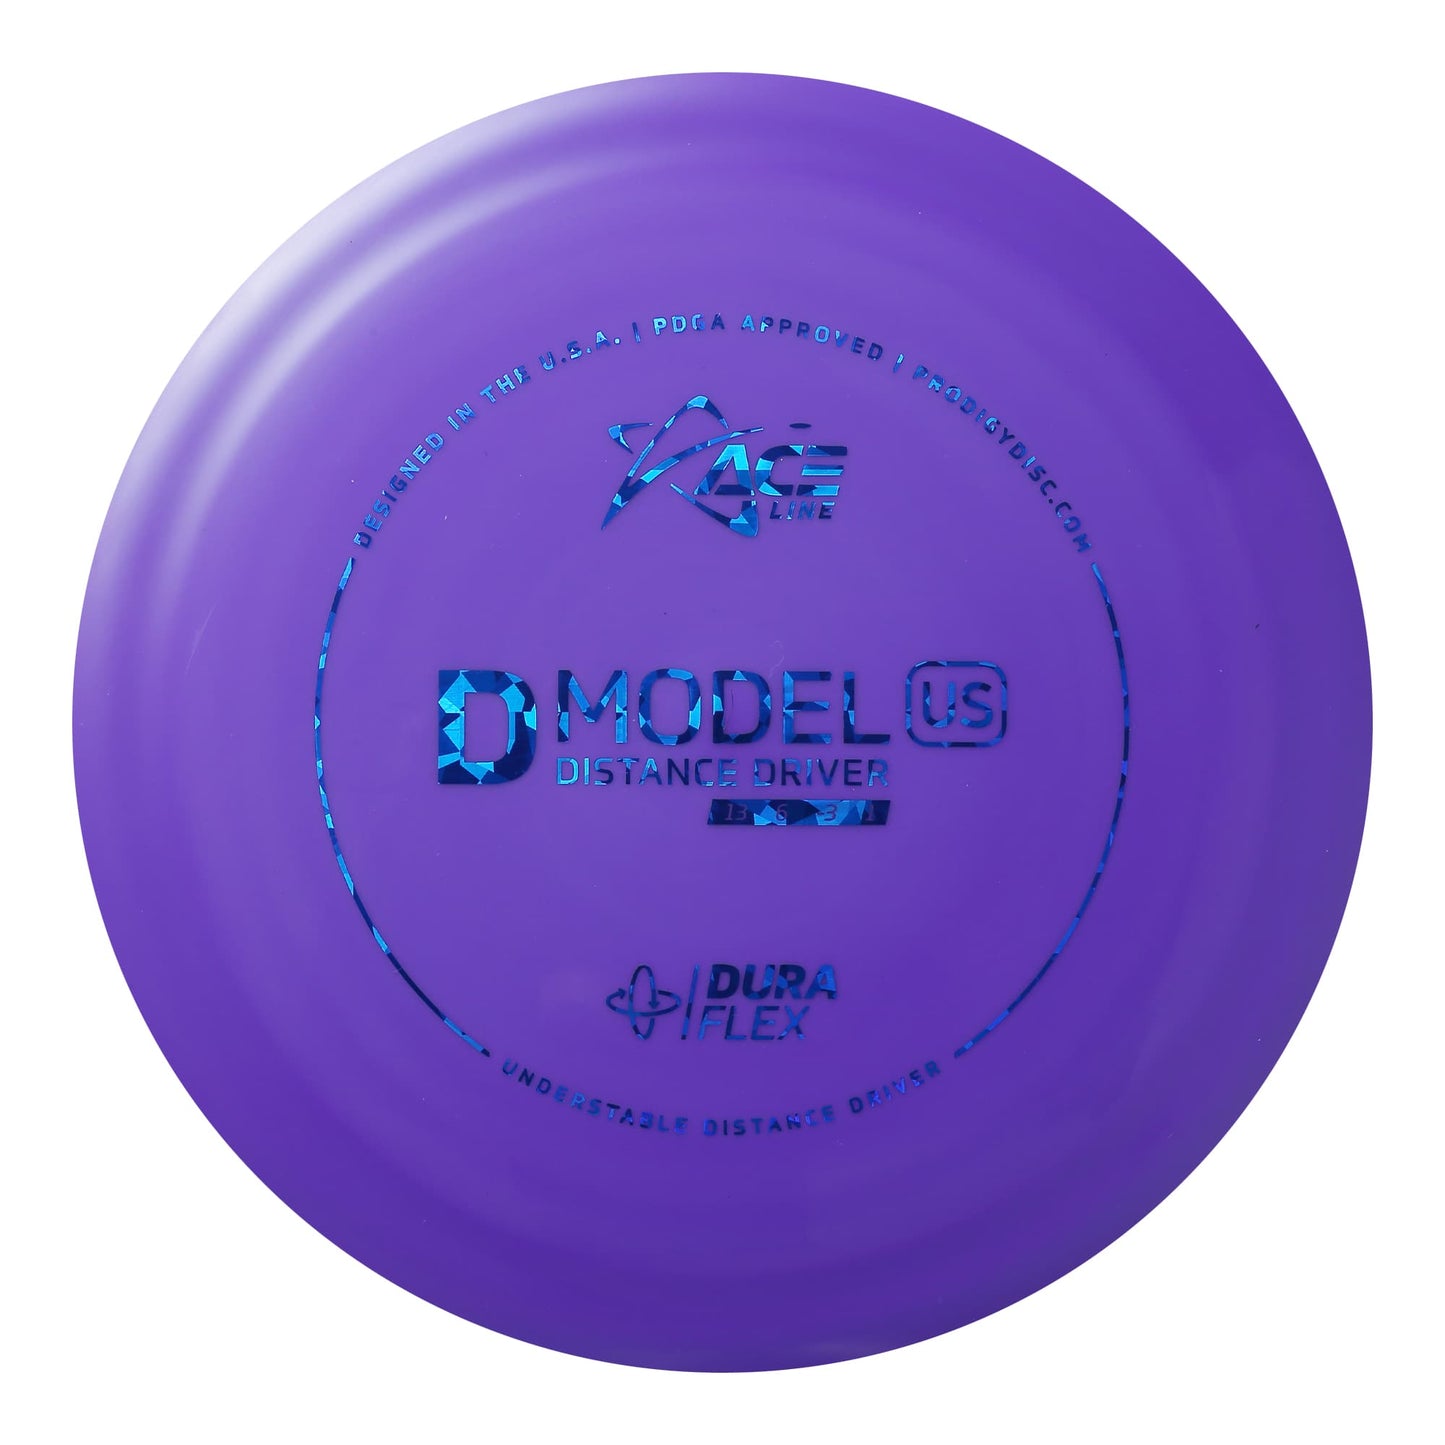 Prodigy Ace Line D Model US Distance Driver Disc - Duraflex Plastic